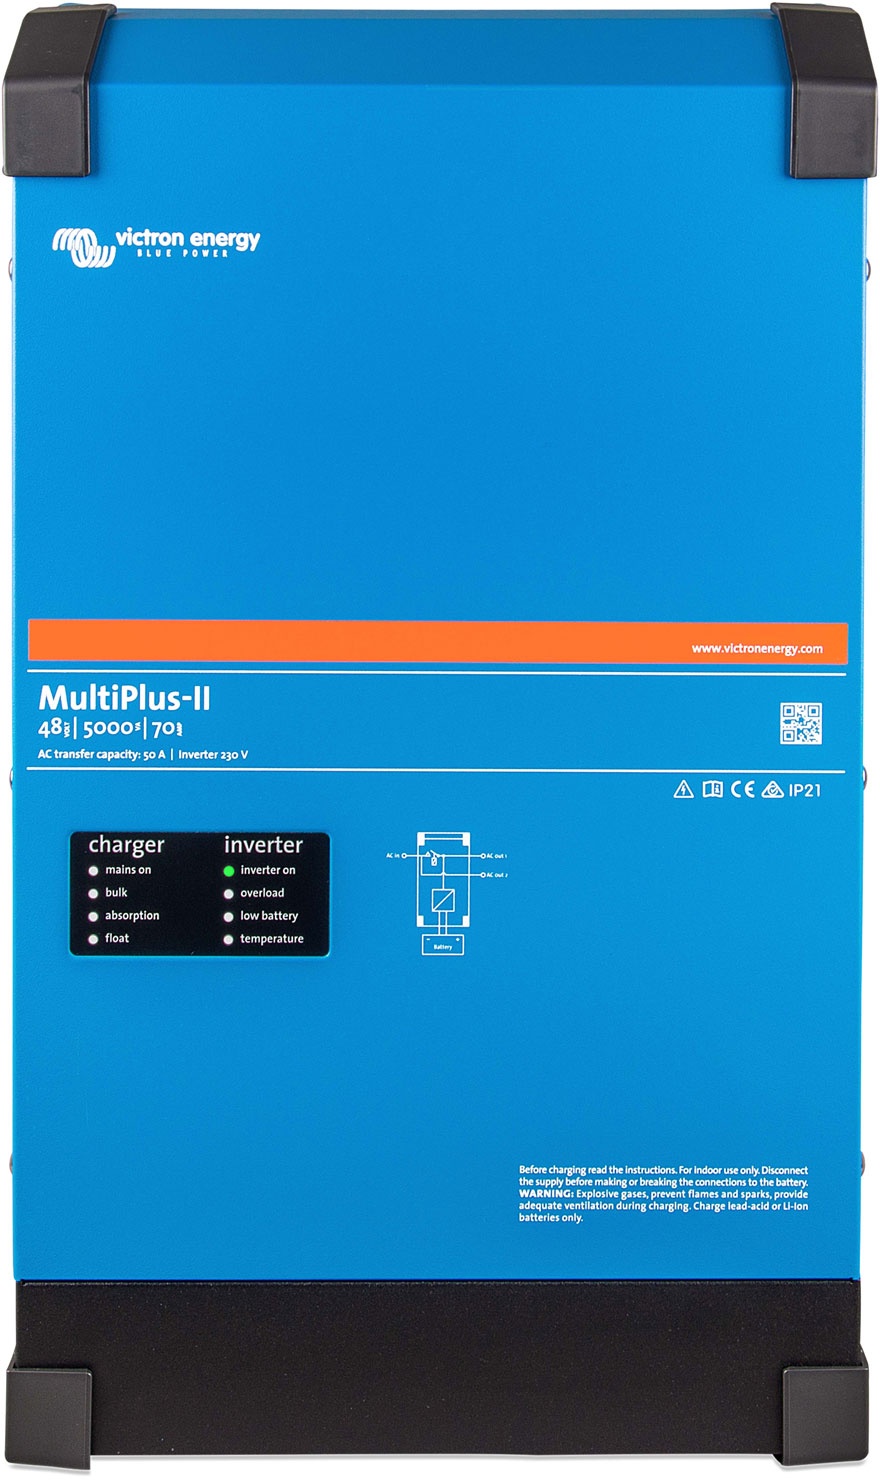 multiplus-ii 48 5000